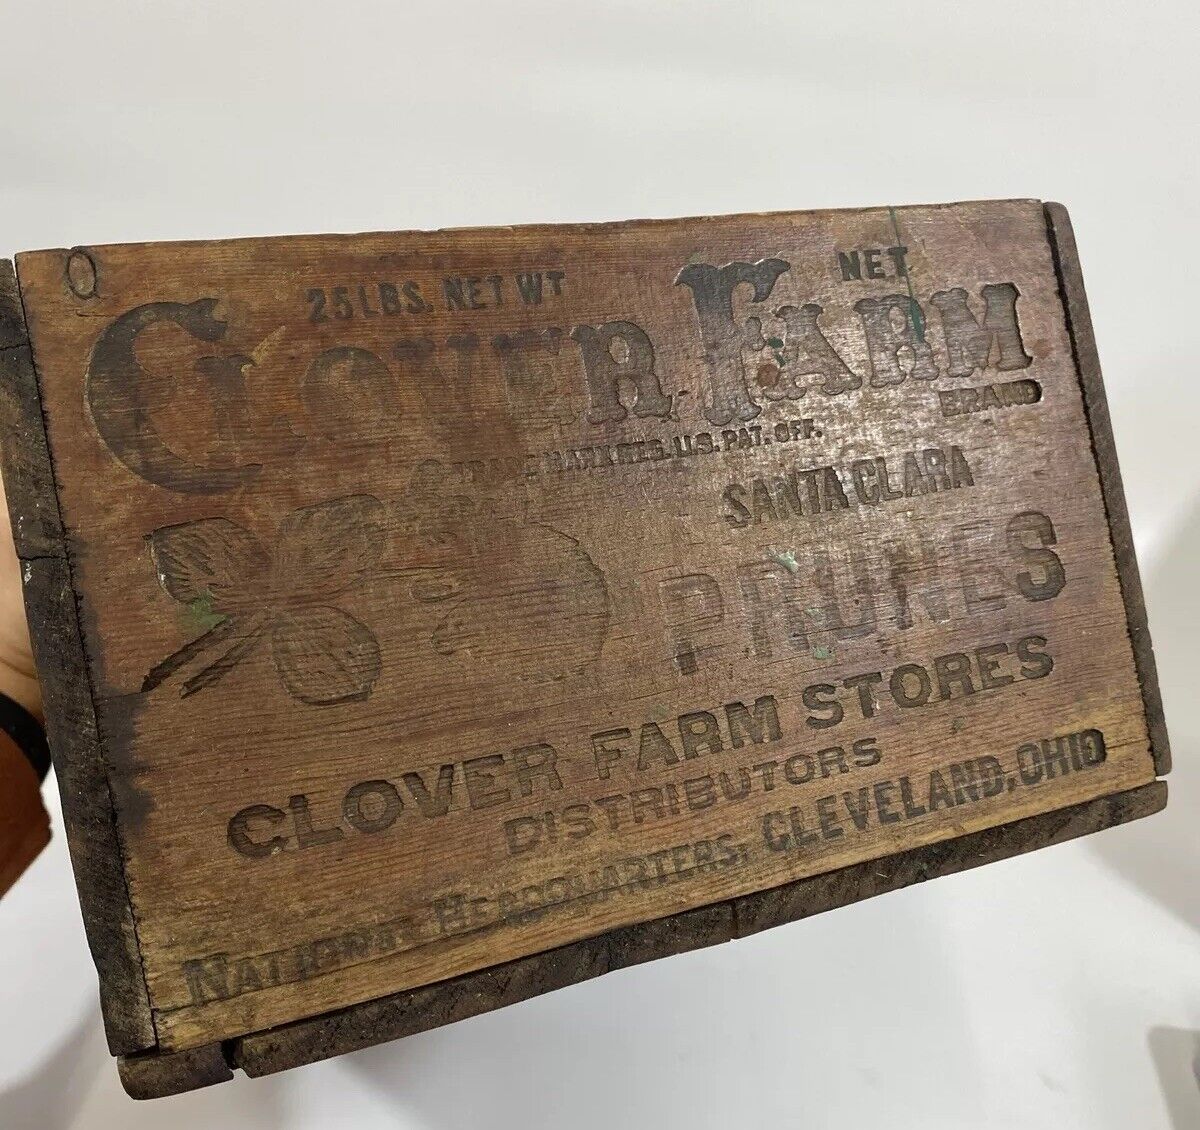 Vintage Clover Farm Store Santa Clara PRUNES WOOD Embossed ADVERTISING CRATE BOX